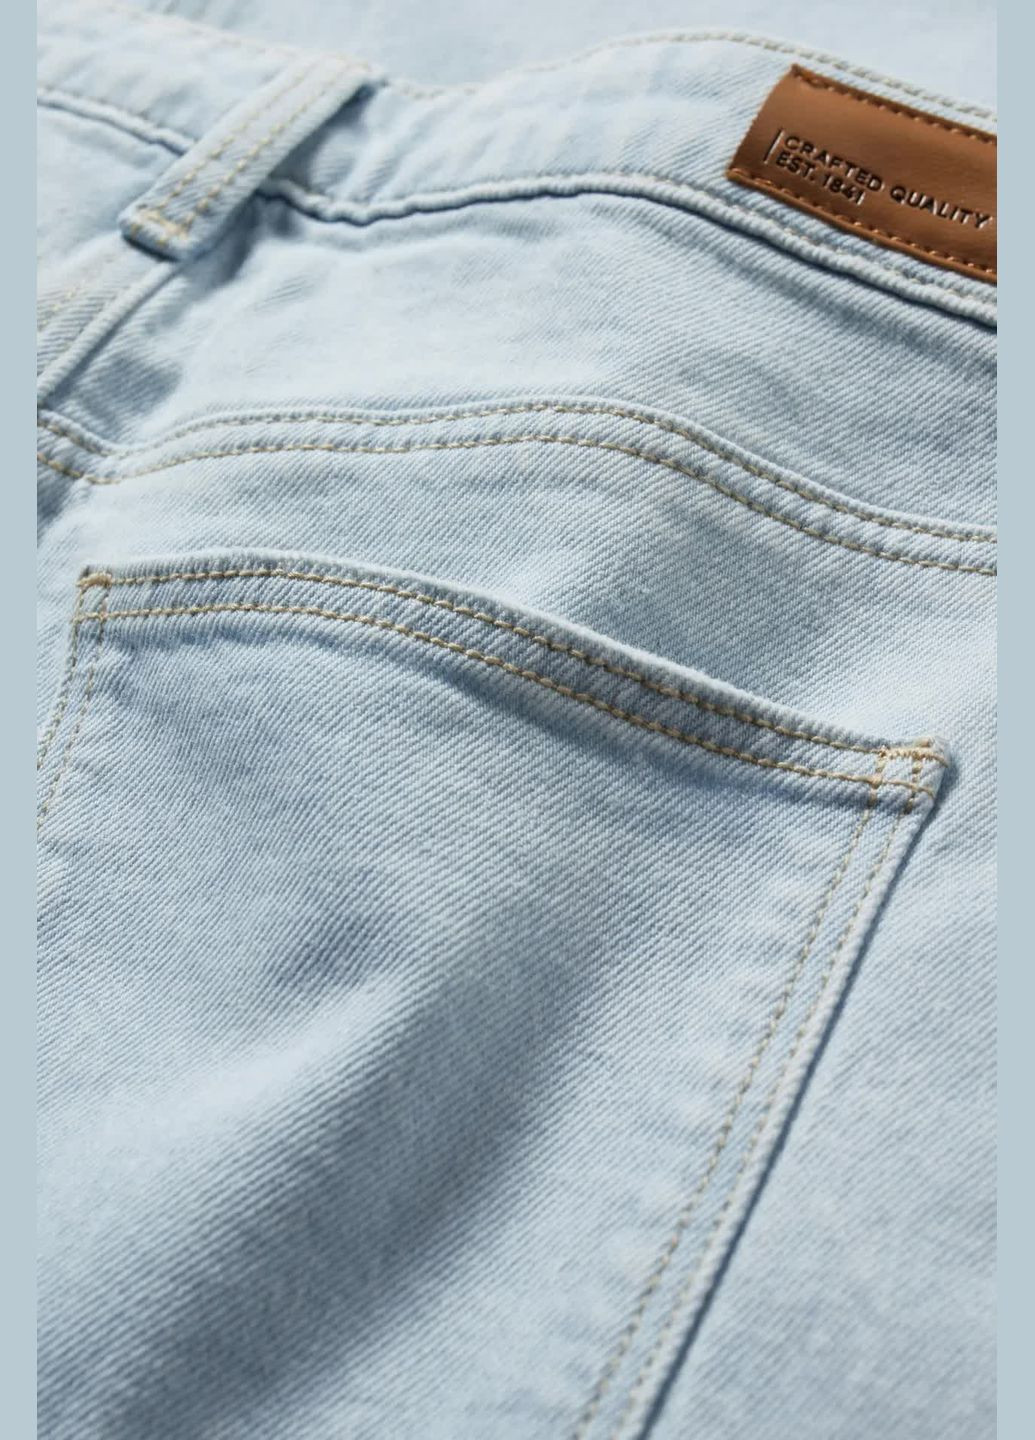 Голубые летние широкие джинсы C&A